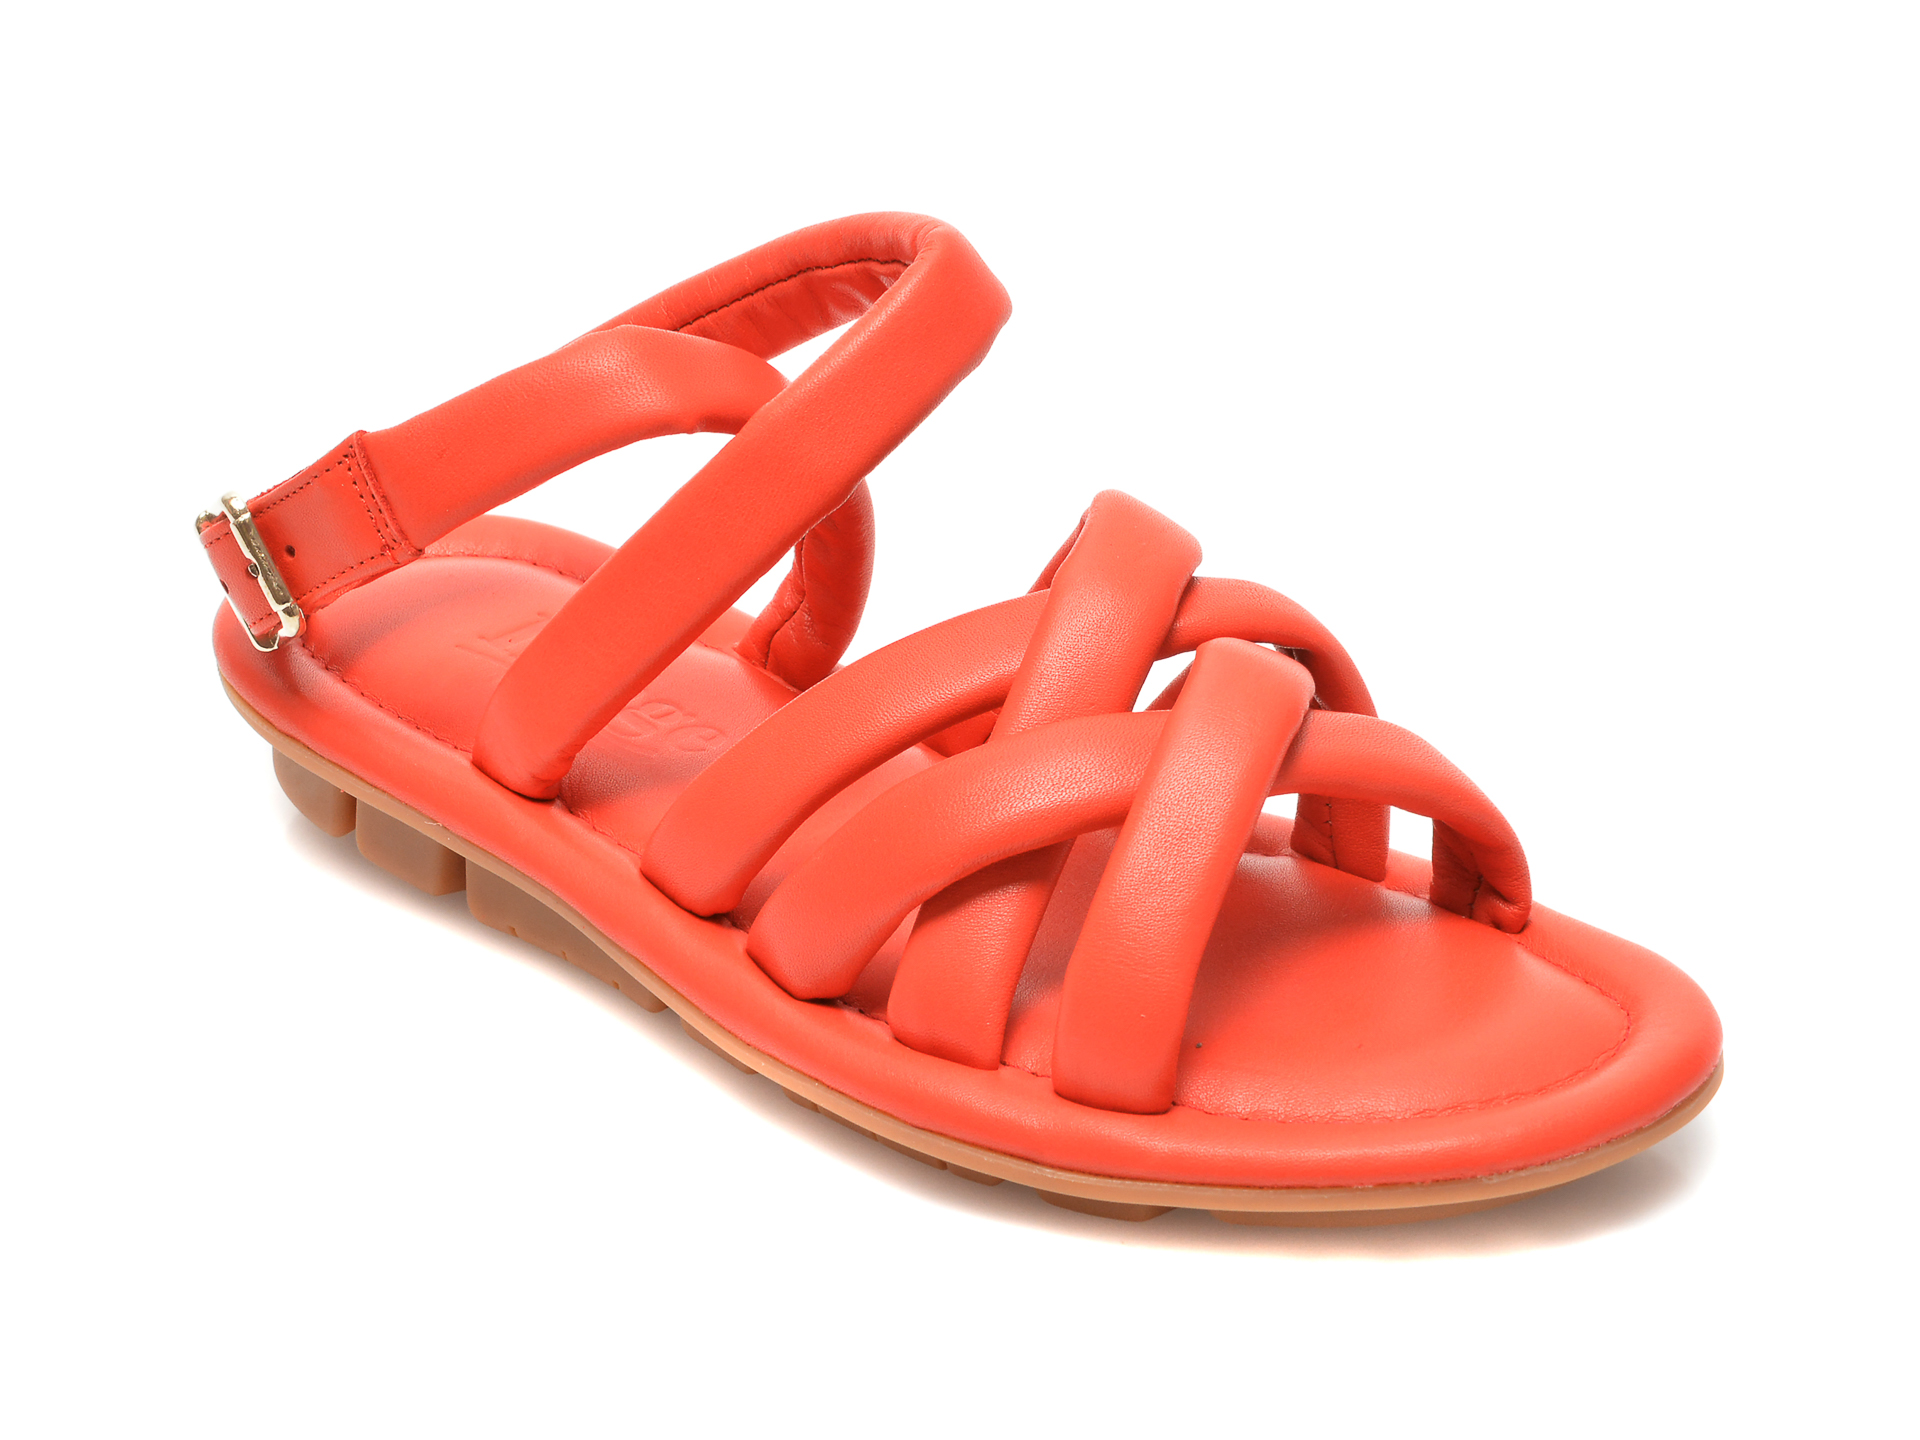 Sandale IMAGE portocalii, 240, din piele naturala /femei/sandale